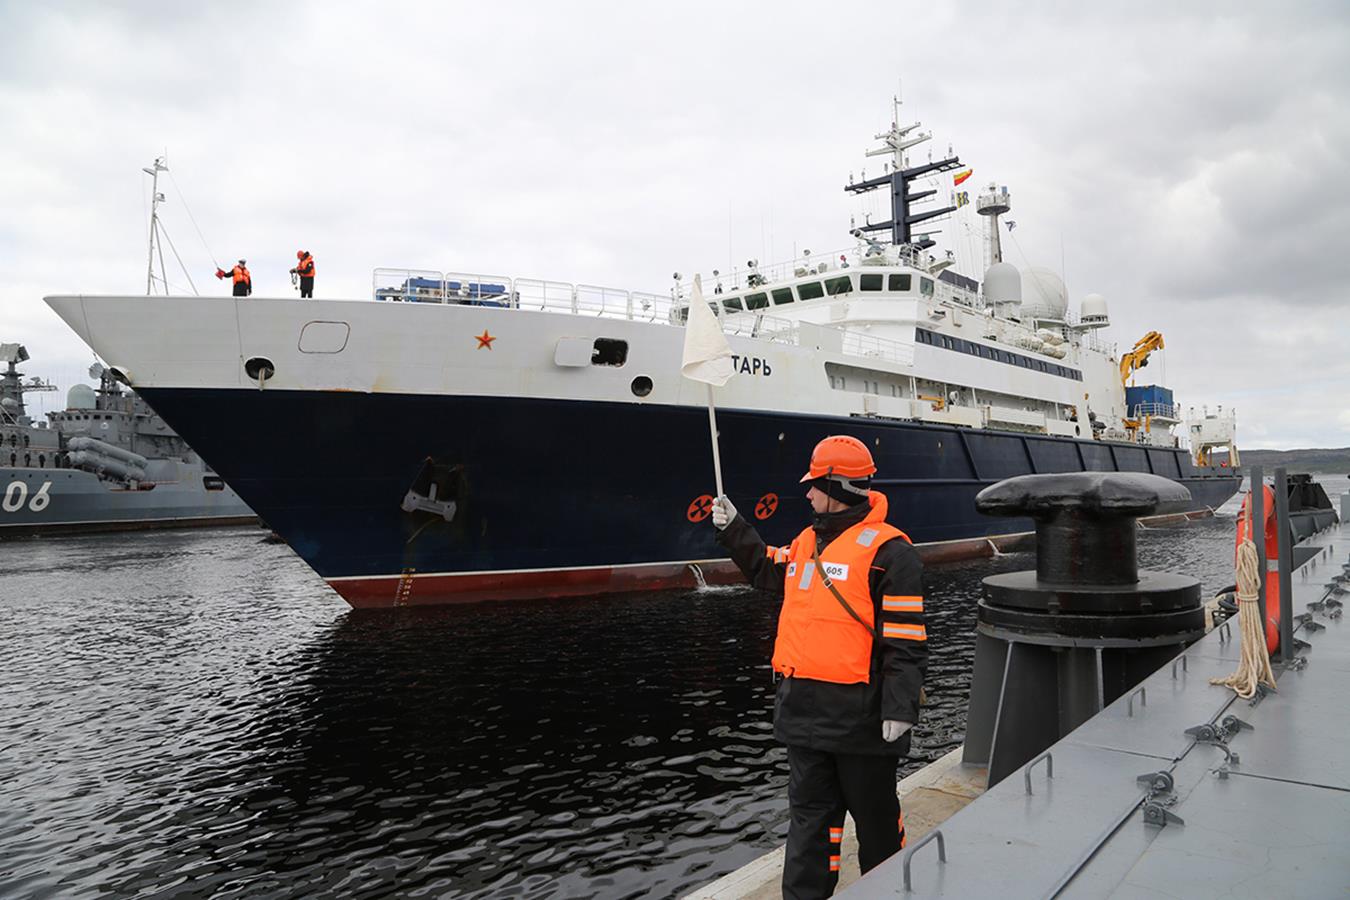 Rosyjski Jantar – dlaczego świat boi się tego “badawczego” statku Rosjan?